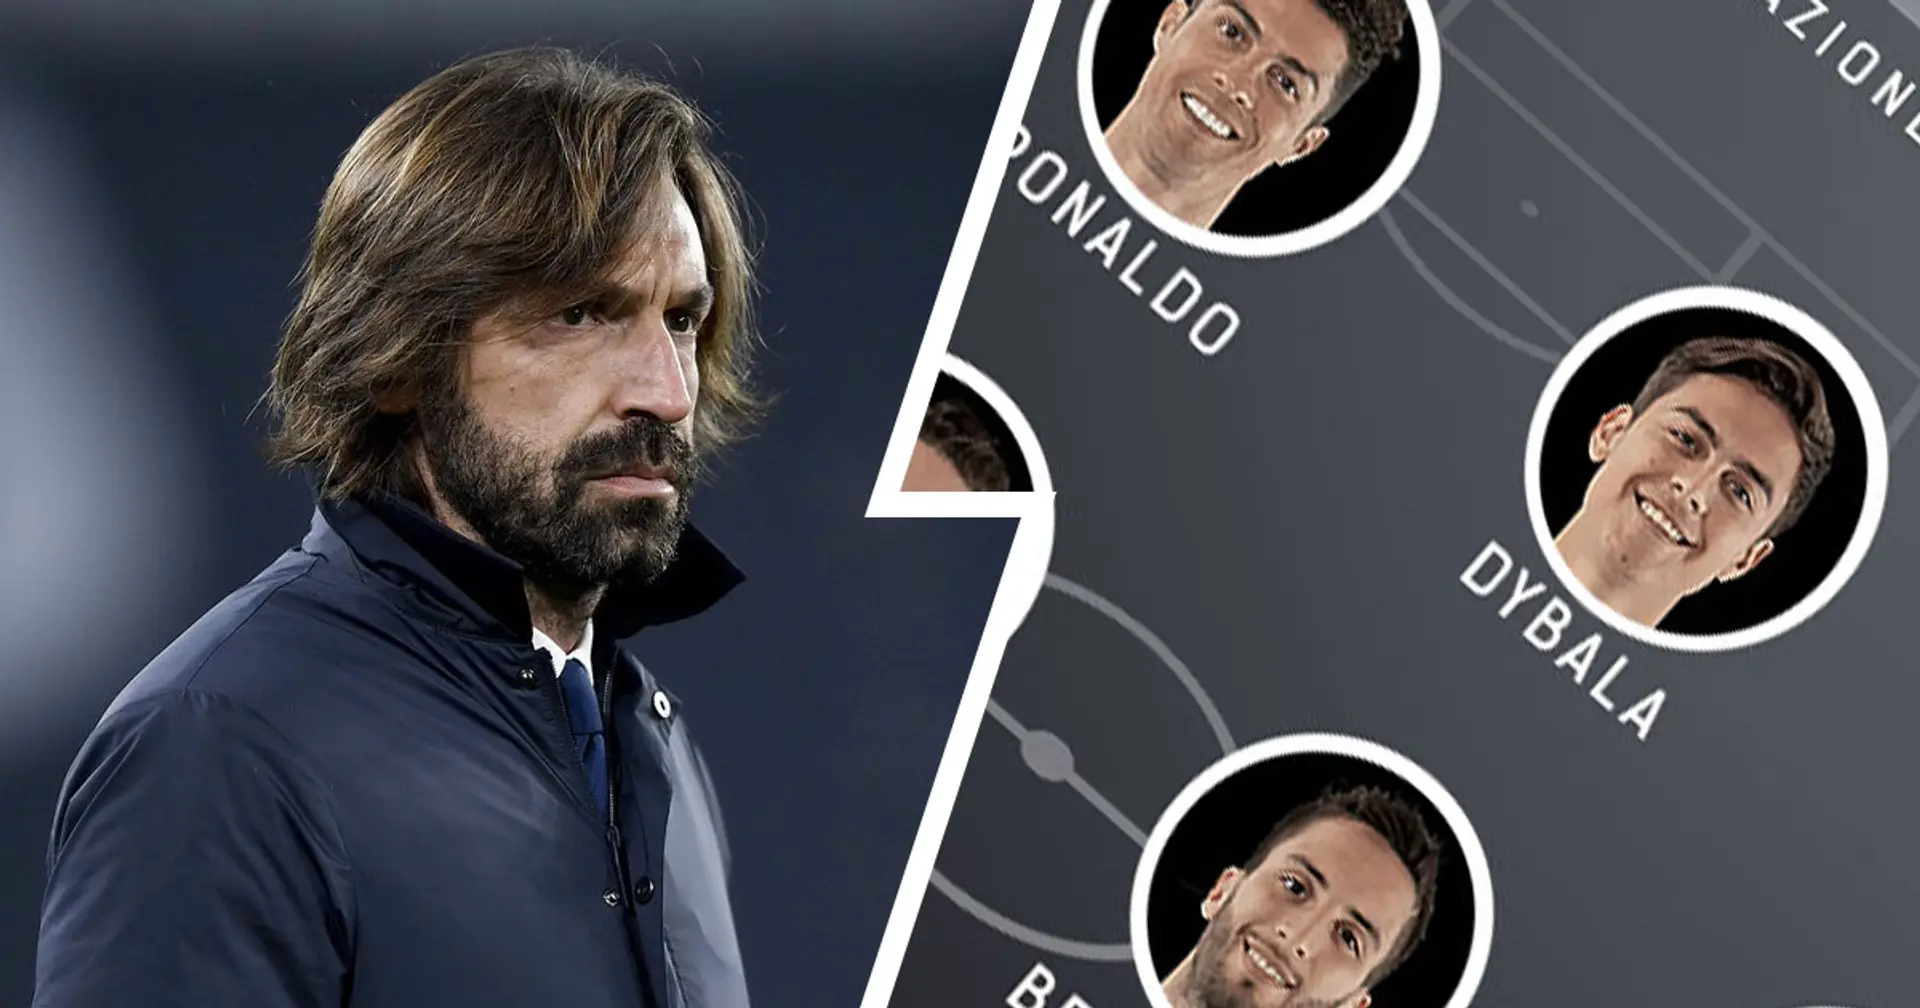 Le probabili formazioni di Juventus-Torino: Dybala torna titolare nel Derby con CR7 , chance per Kulusevski